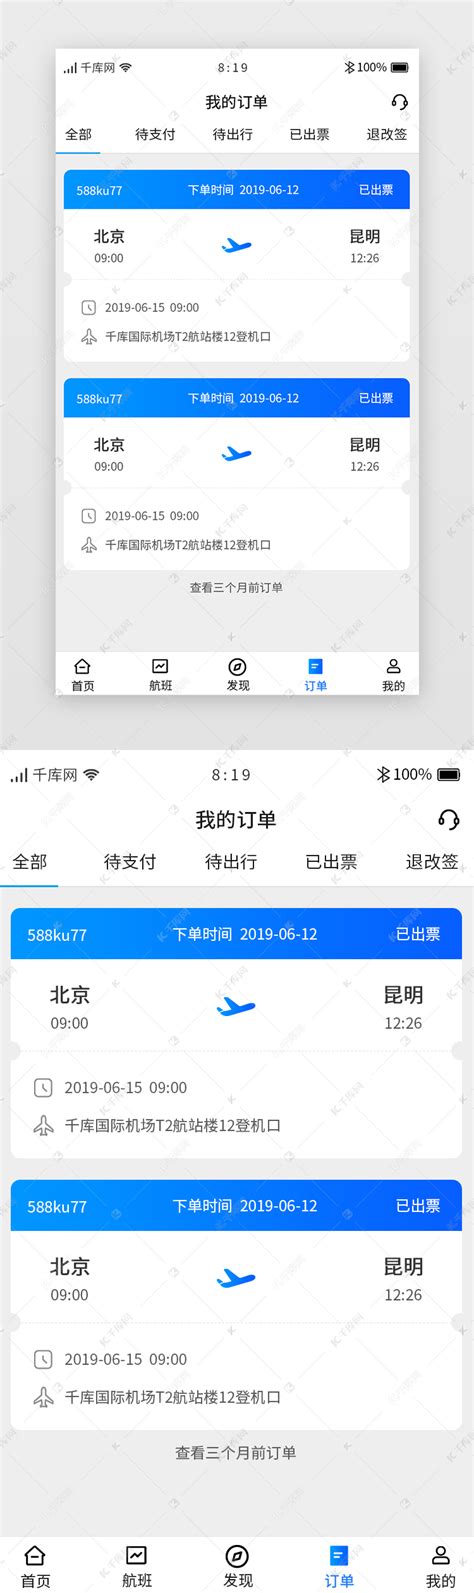 飞机票航空售票查询预定系统(php+mysql)_shitoujie_123的博客-CSDN博客